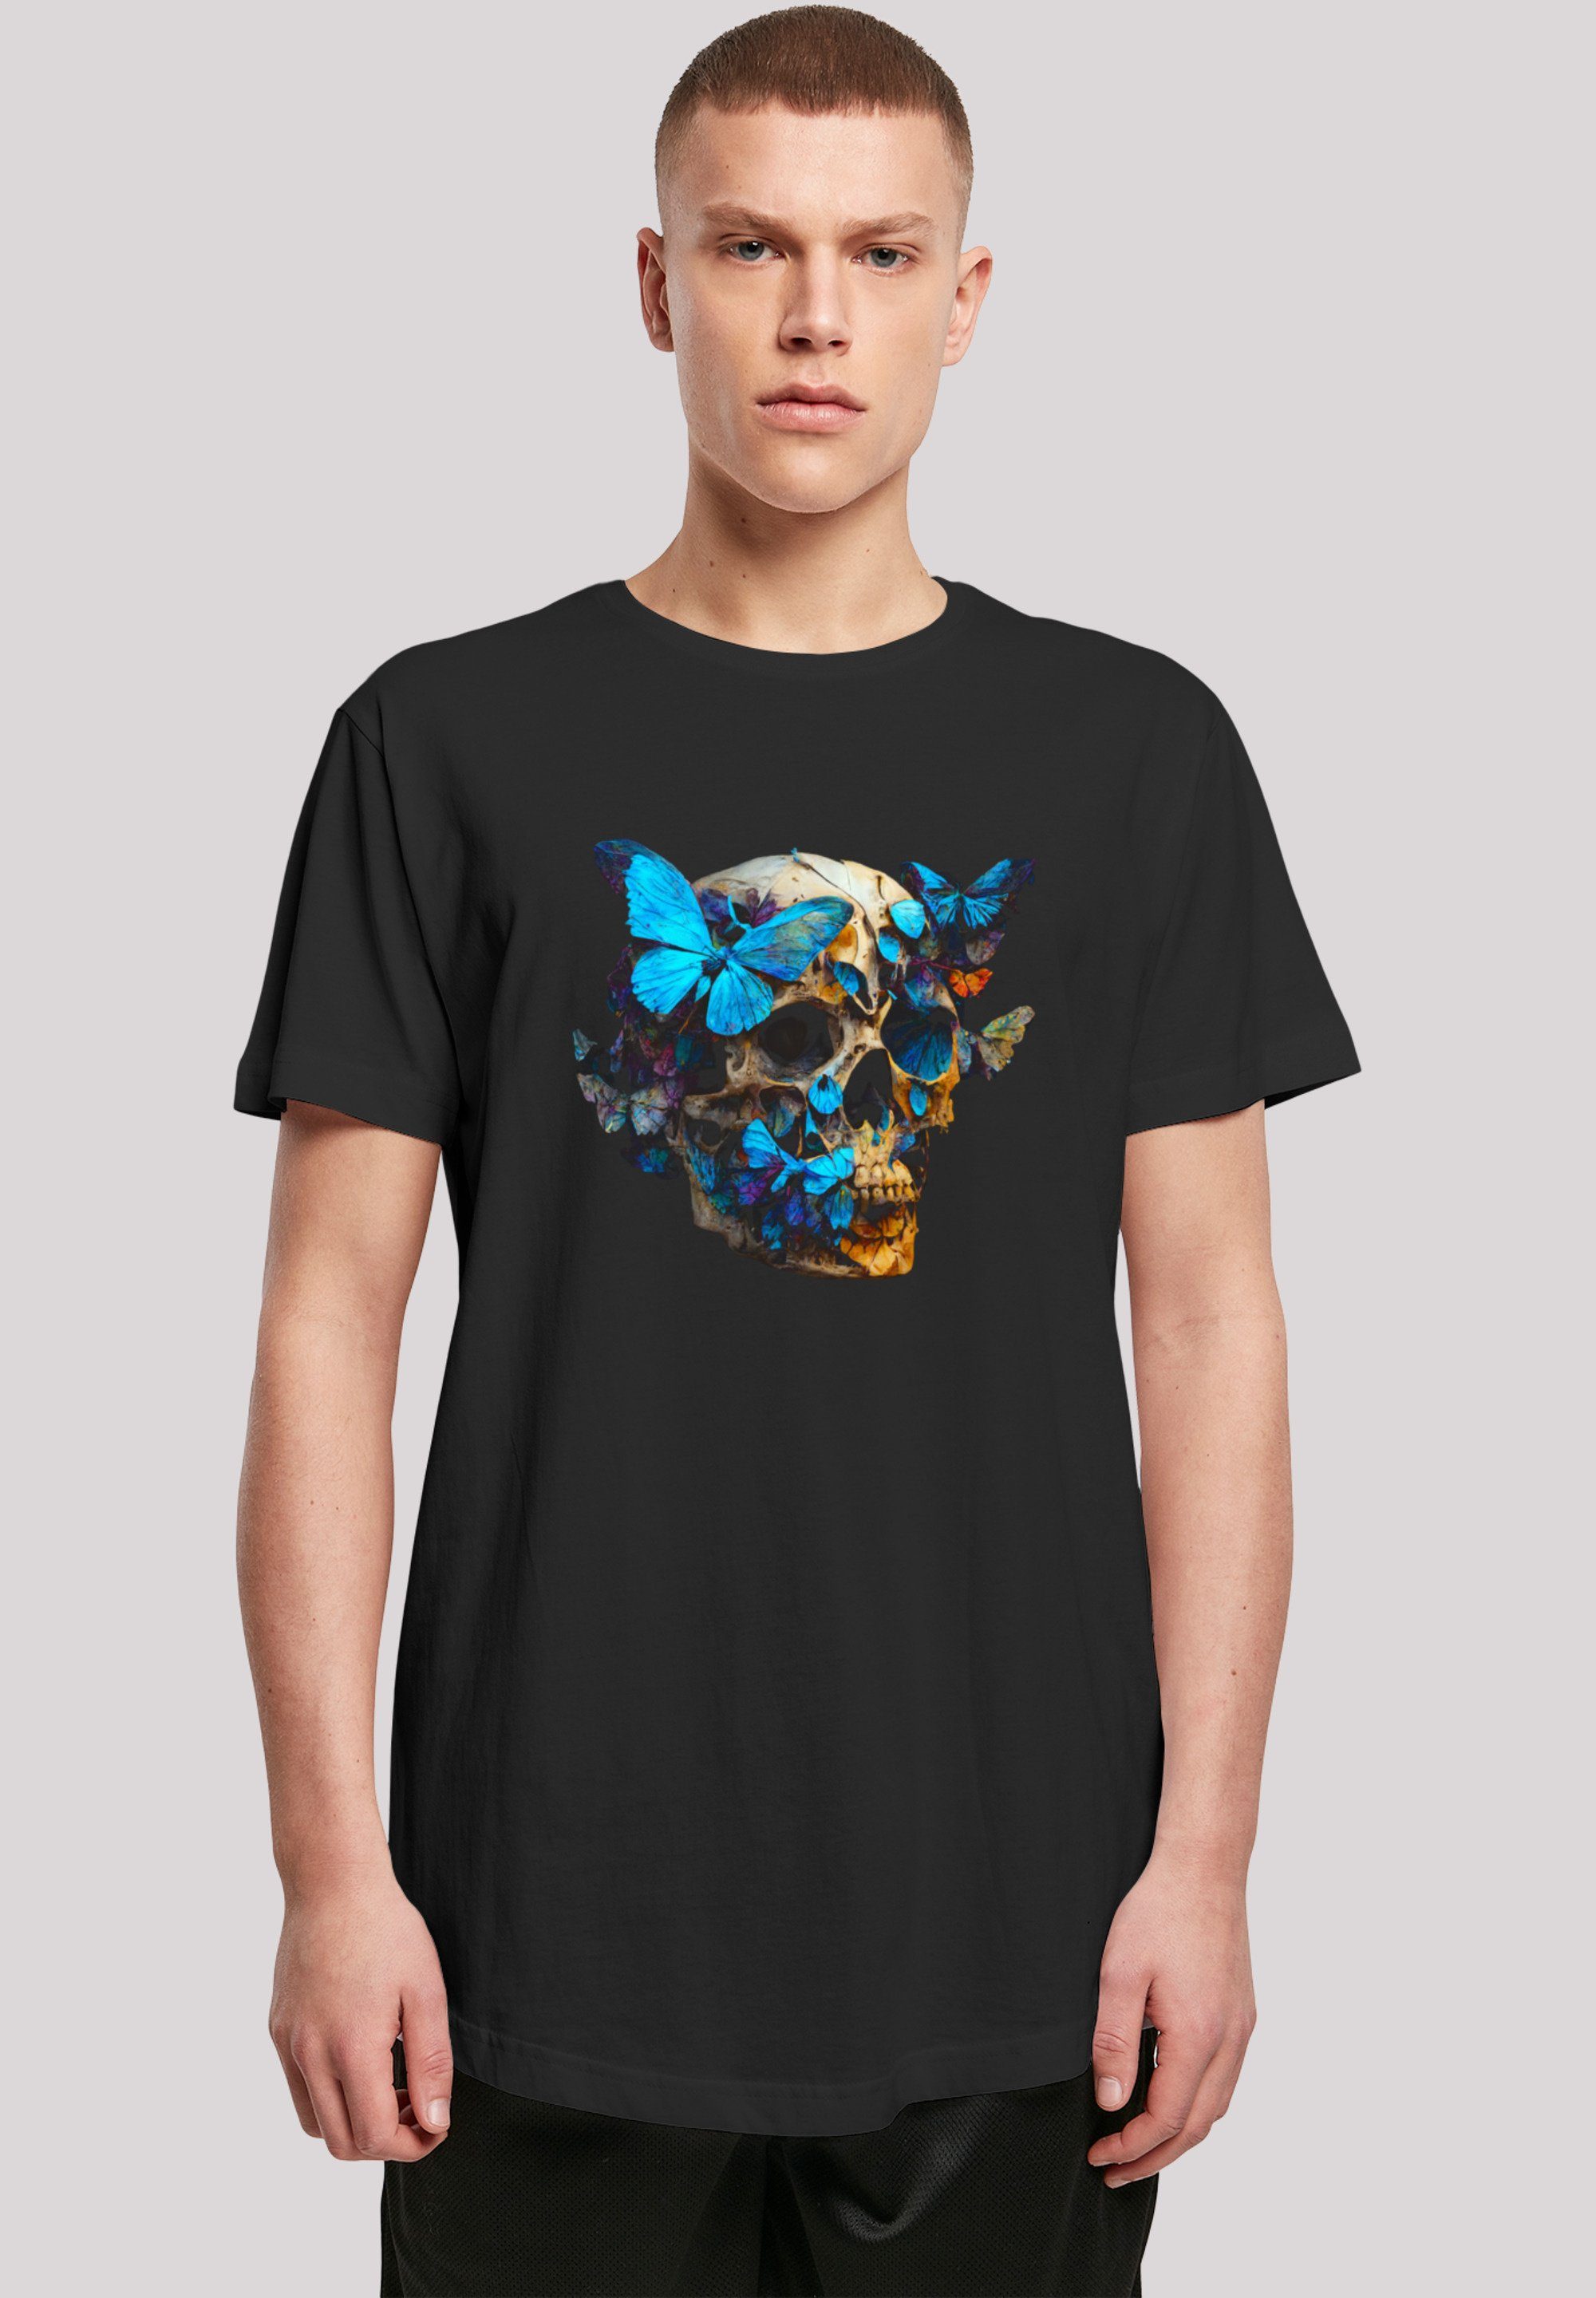 F4NT4STIC T-Shirt Print, Fällt TEE Schmetterling Größe aus, Skull LONG bitte eine bestellen weit kleiner